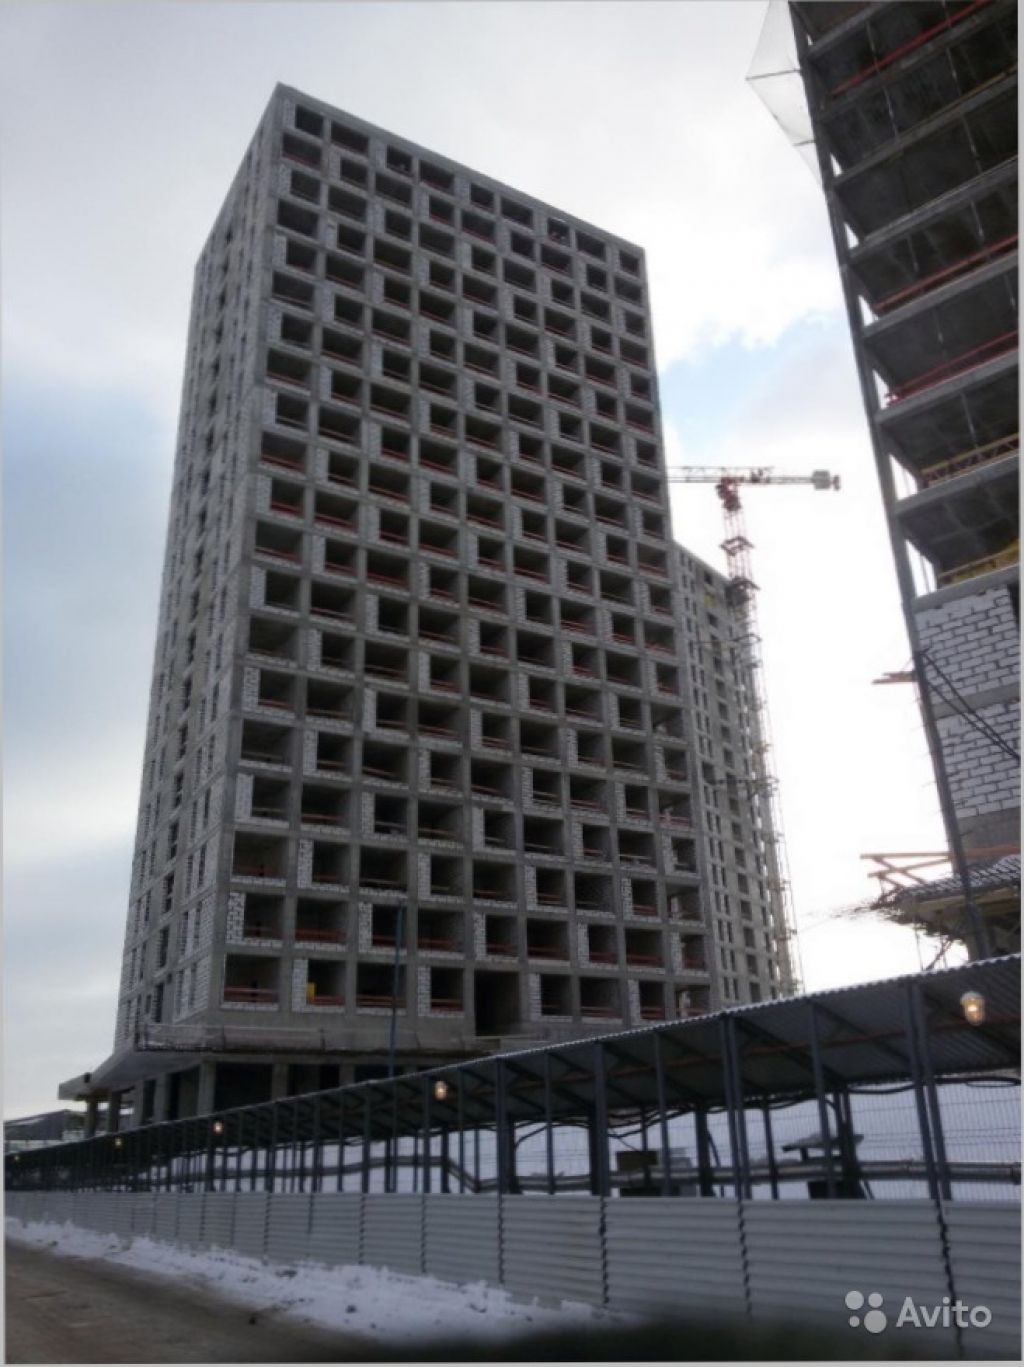 Продам квартиру в новостройке МФК Citimix (Сити микс) (Апартаменты) , Корпус J Студия 22.8 м² на 3 этаже 9-этажного кирпичного дома , тип участия: ДДУ в Москве. Фото 1